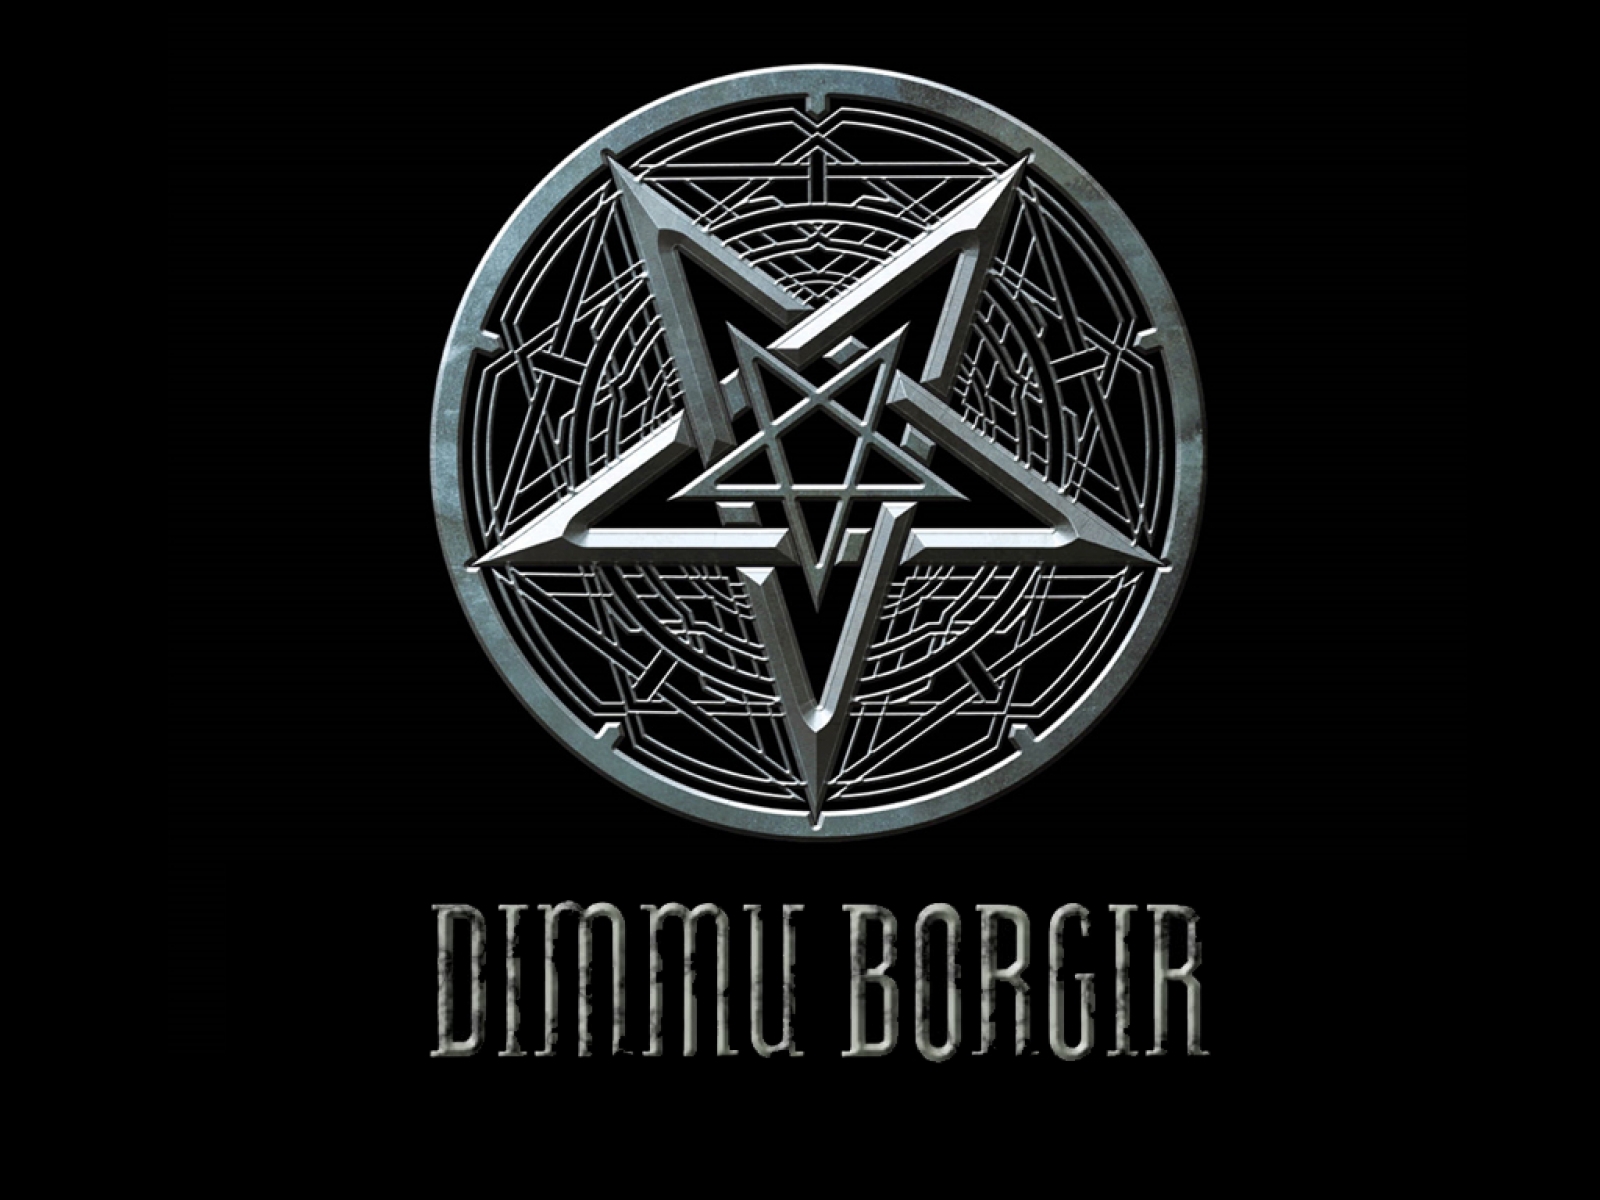 Dimmu Borgir  Dimmu borgir, Extreme metal, Heavy metal